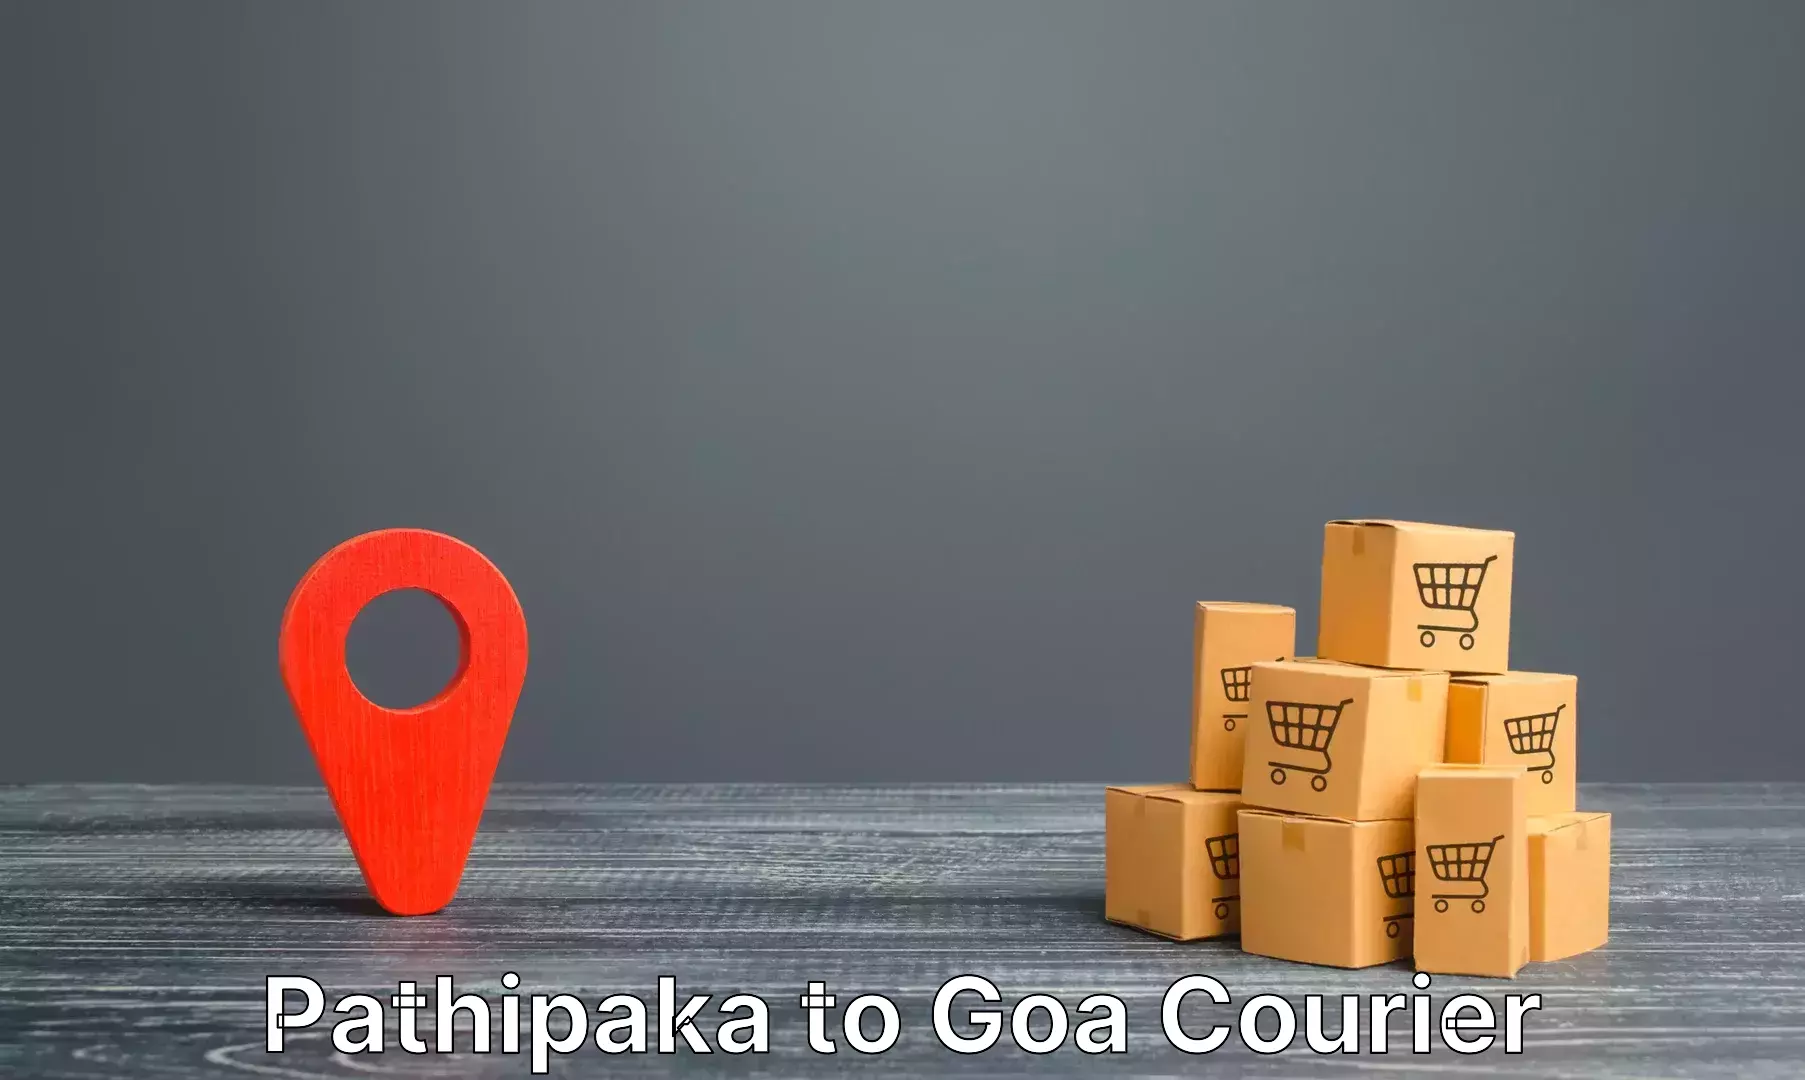 Luggage shipment specialists Pathipaka to Goa University